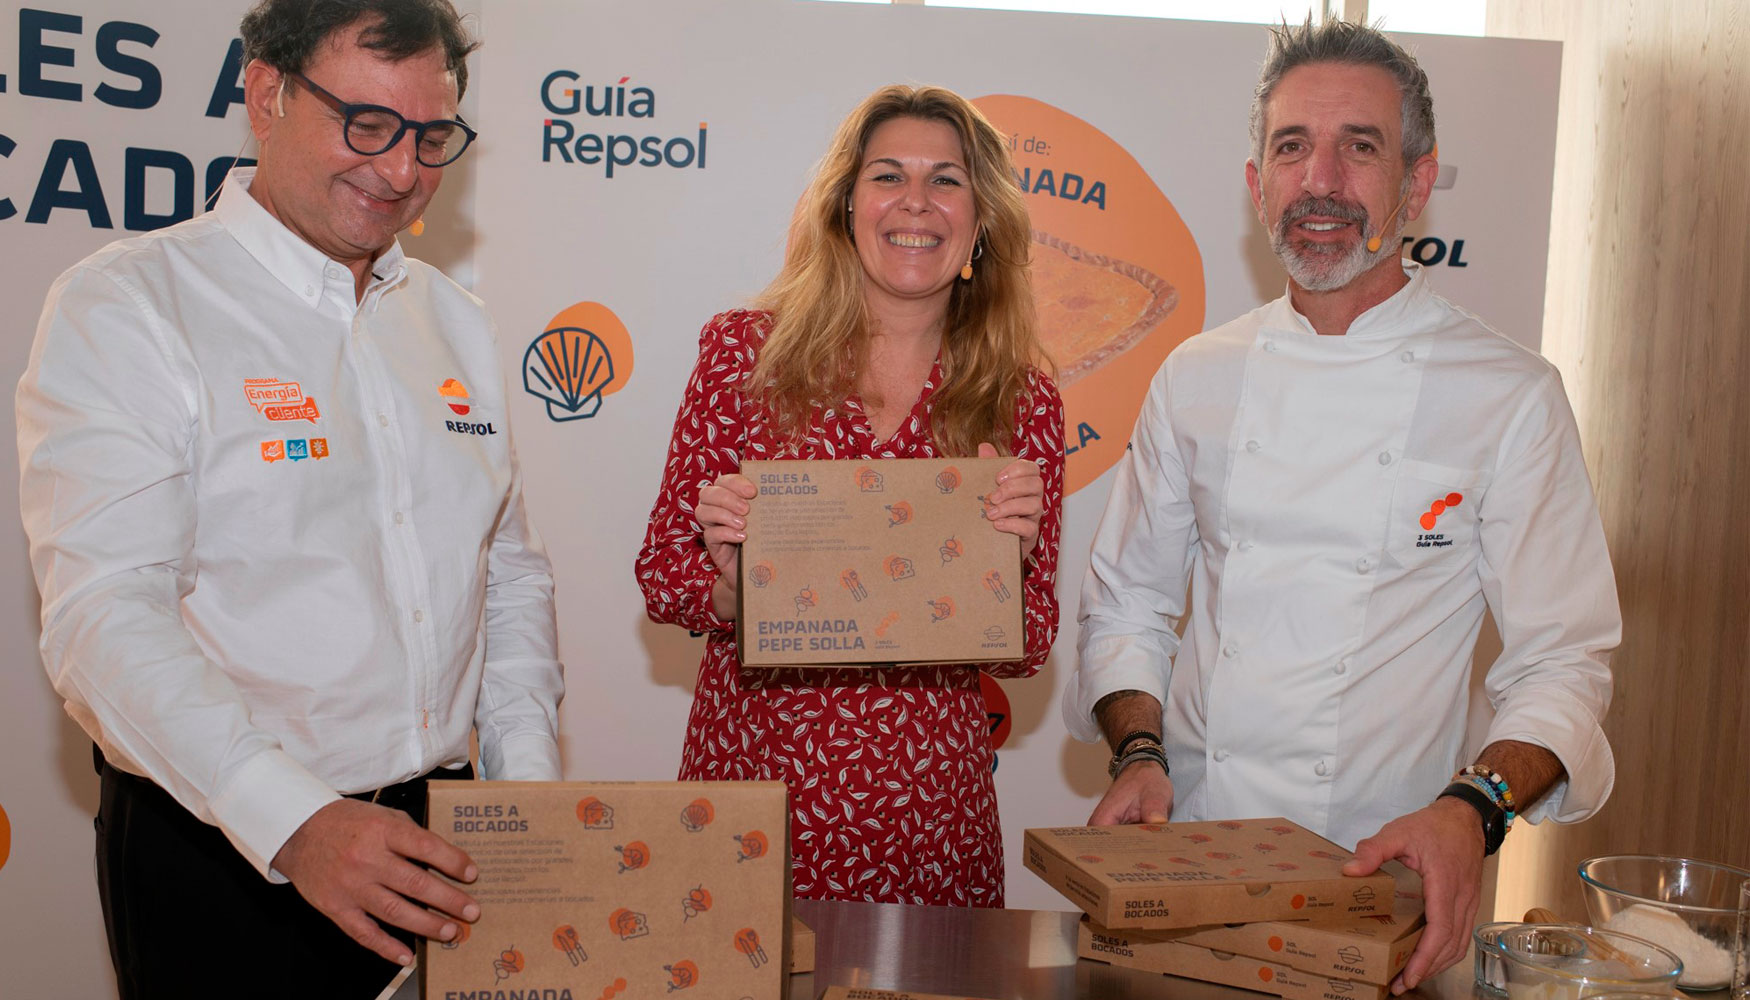 Las empanadas del cocinero gallego estarn disponibles en 187 estaciones de servicio Repsol por un tiempo limitado...